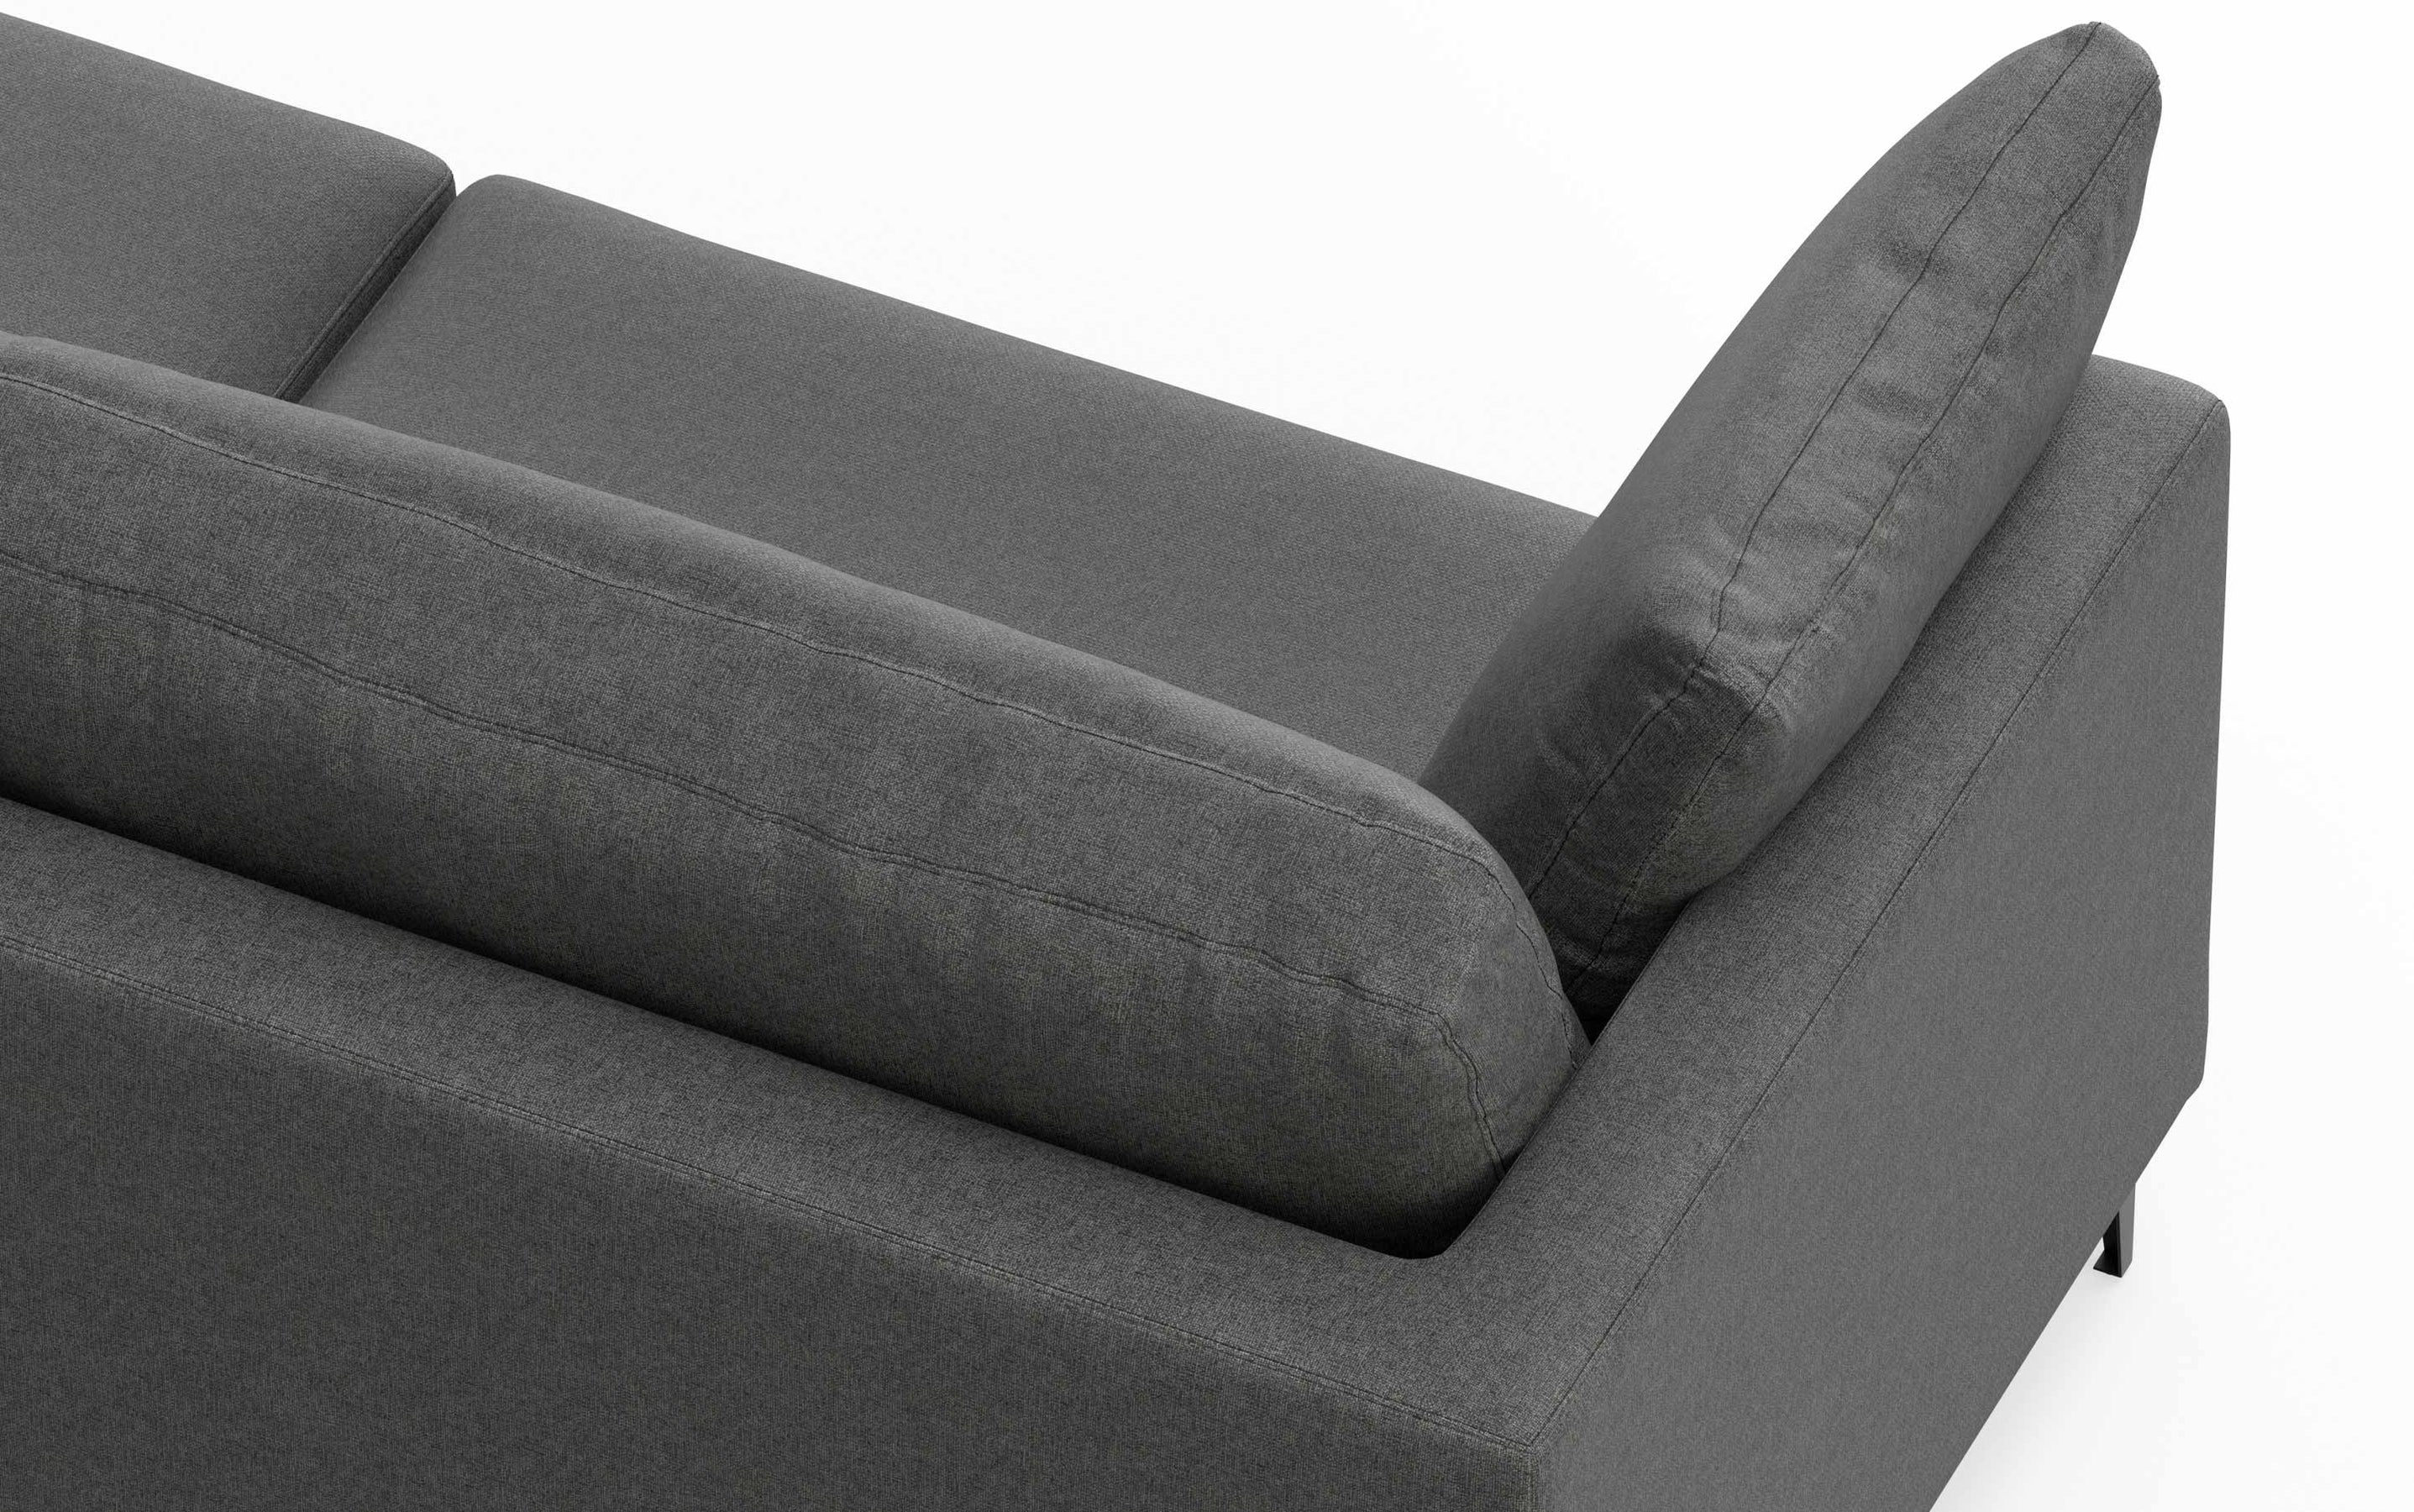 Pebble Grey | Ava 76 inch Mid Century Sofa